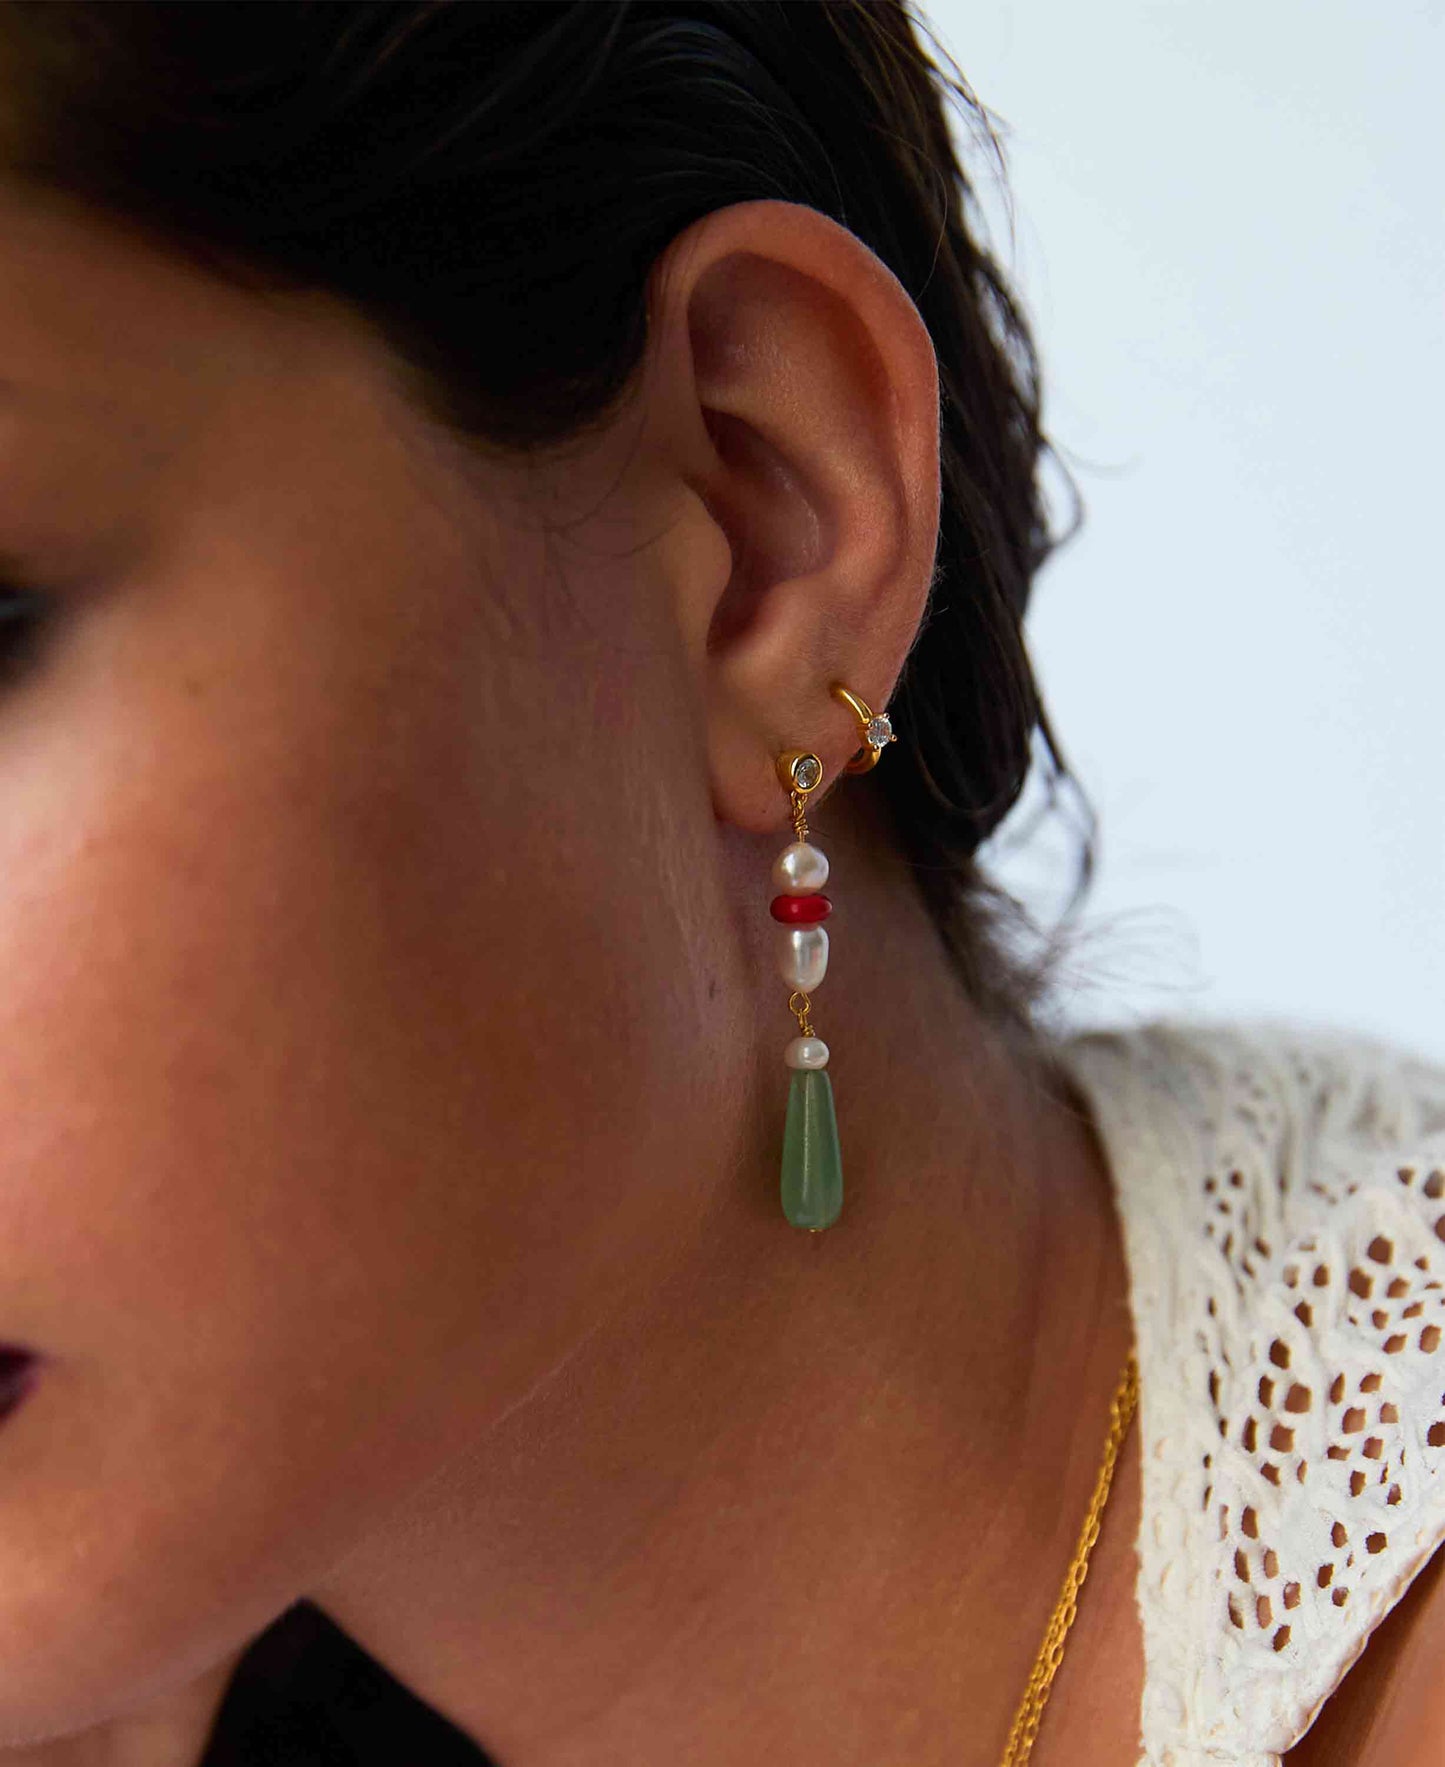 Denise earrings